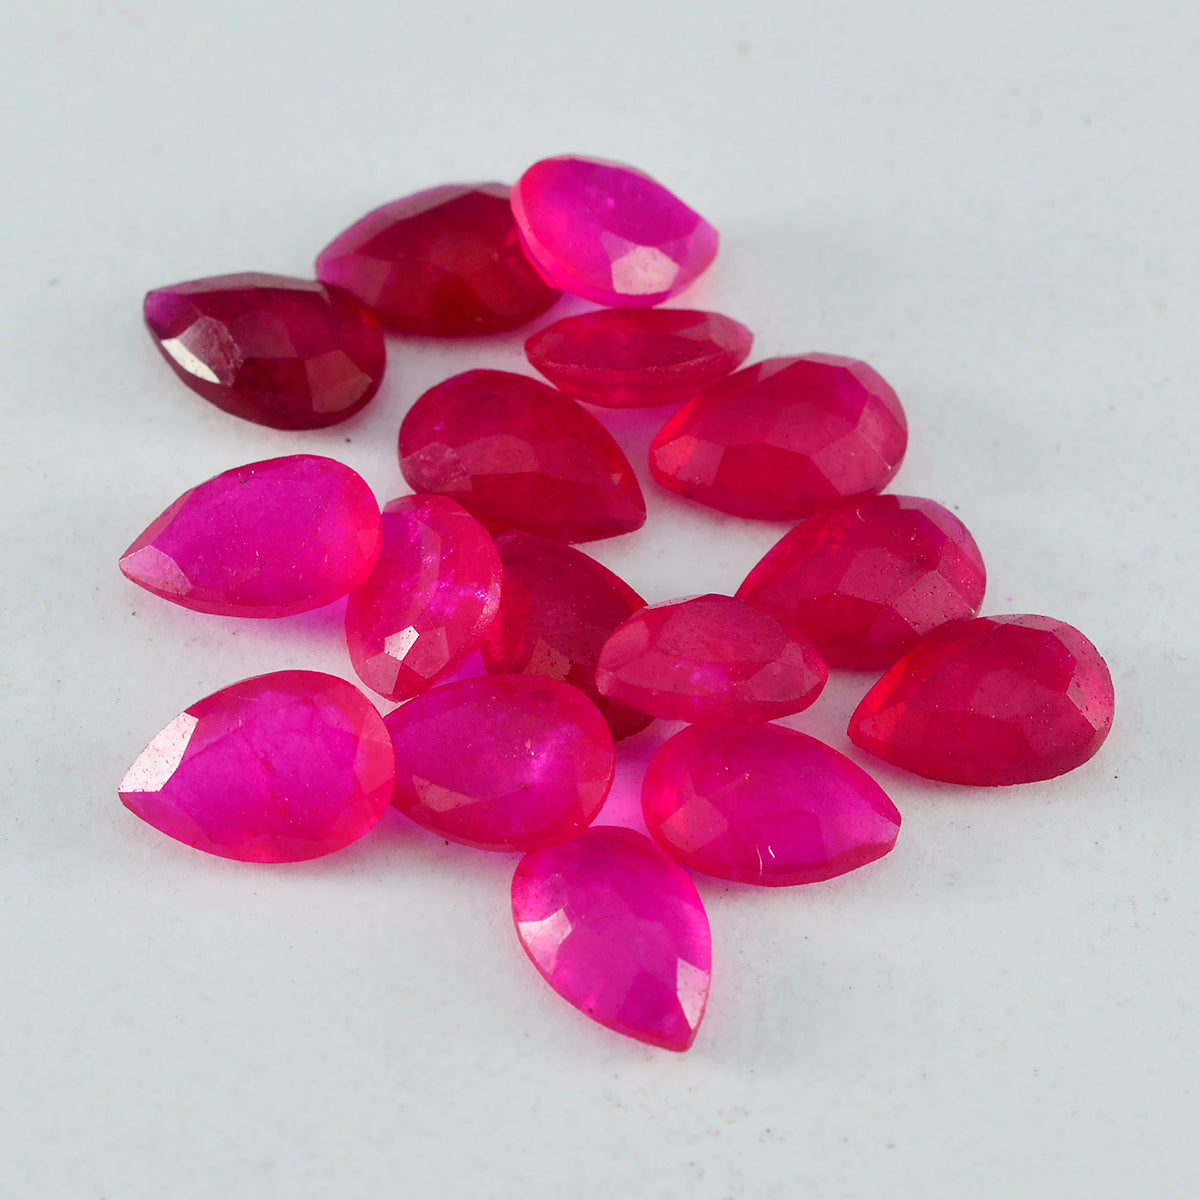 Riyogems 1pc véritable jaspe rouge à facettes 7x10mm forme de poire belle pierre précieuse de qualité